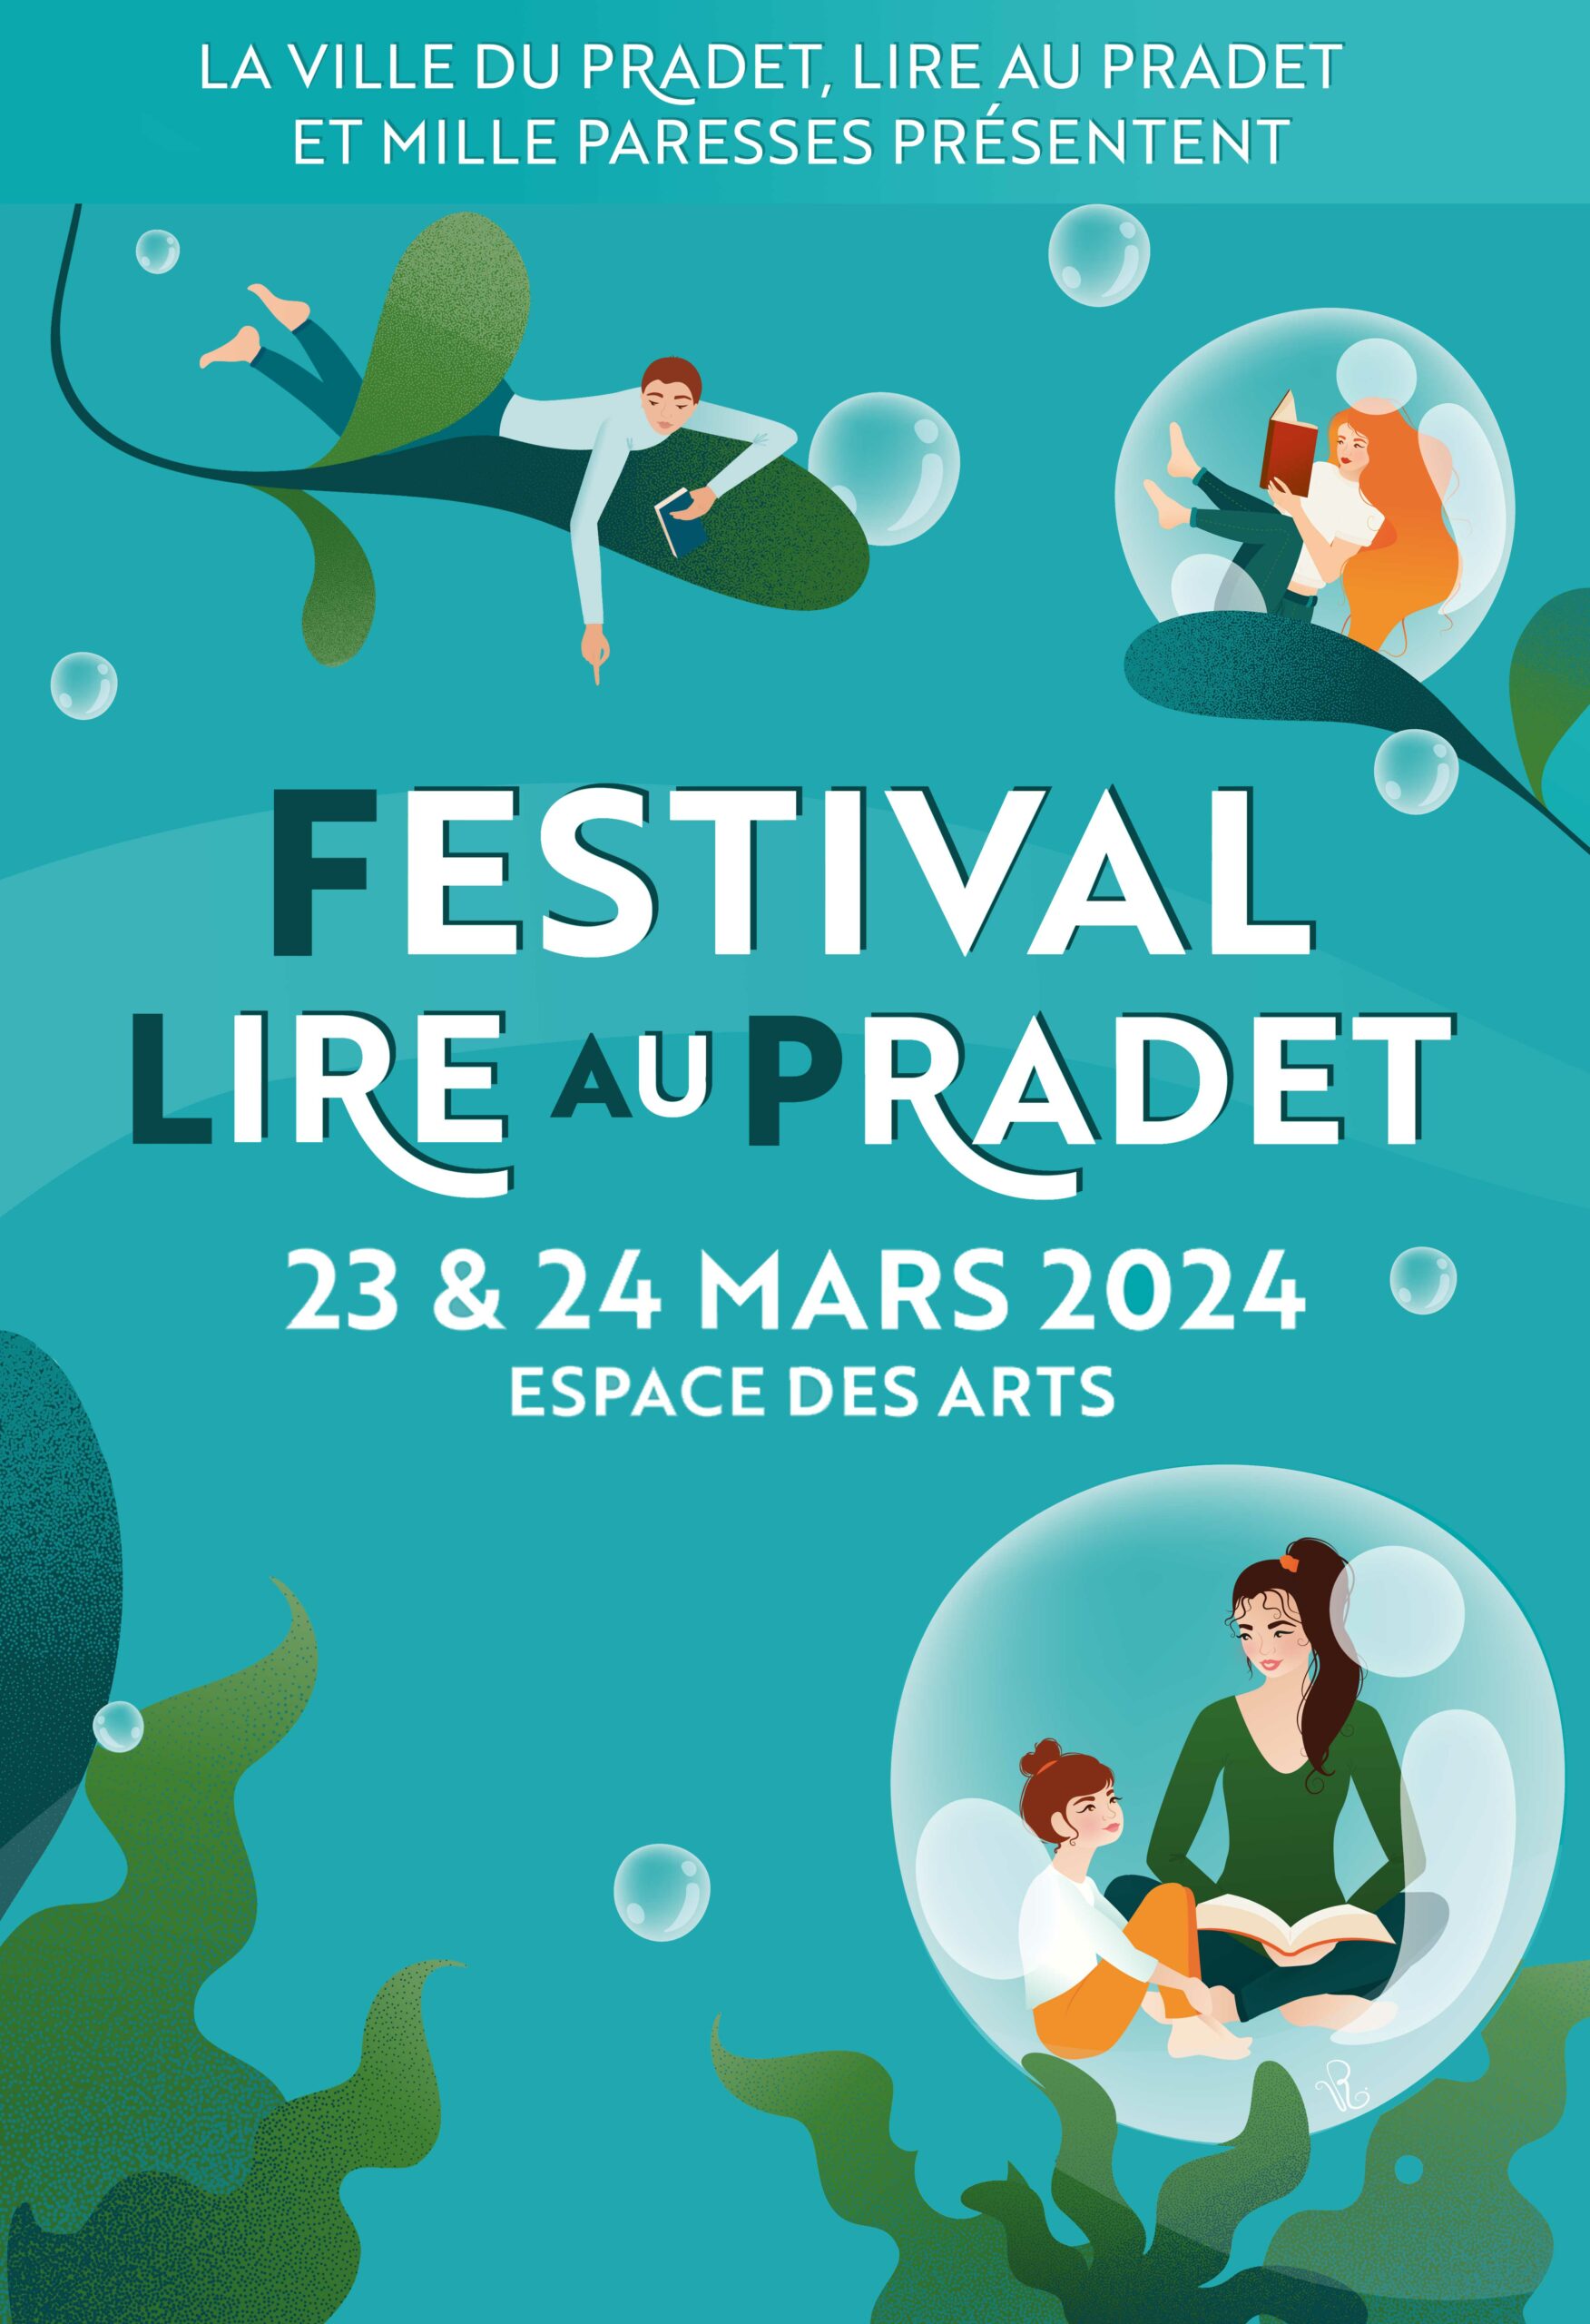 Festival Lire au Pradet. 2ème édition les 23 et 24 Mars 2024 à l'Espace des Arts, présenté par La Ville du Pradet, l'association Lire Au Pradet et la librairie Mille Paresses.